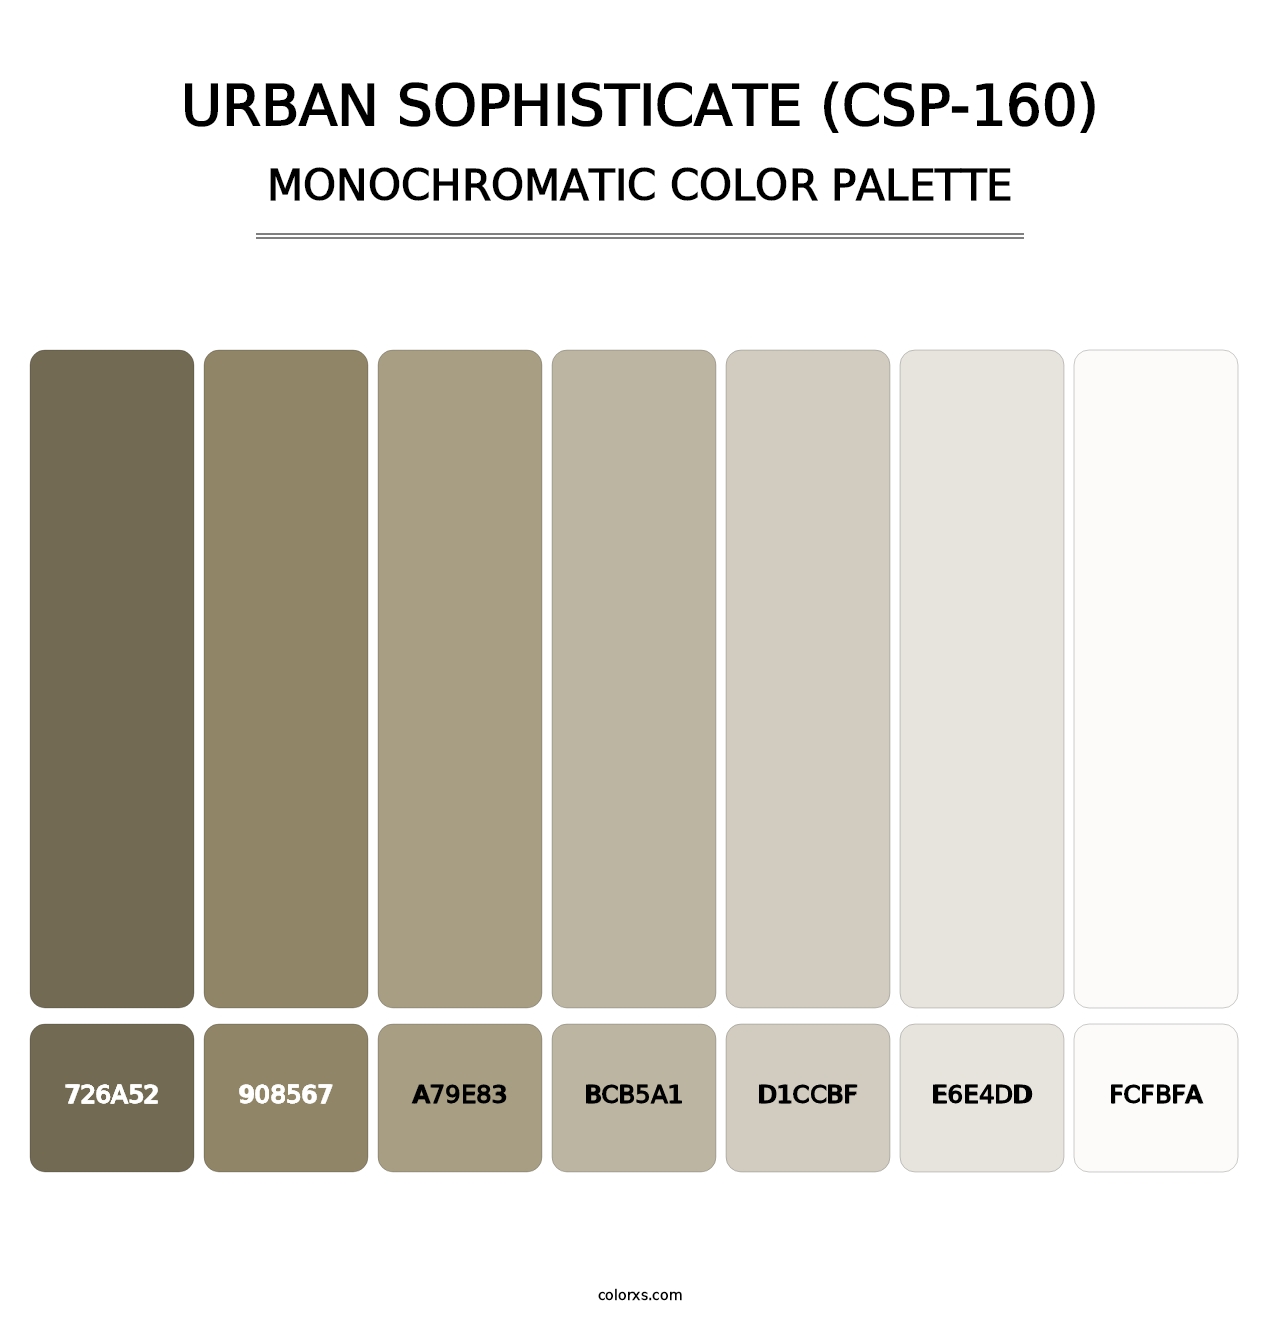 Urban Sophisticate (CSP-160) - Monochromatic Color Palette